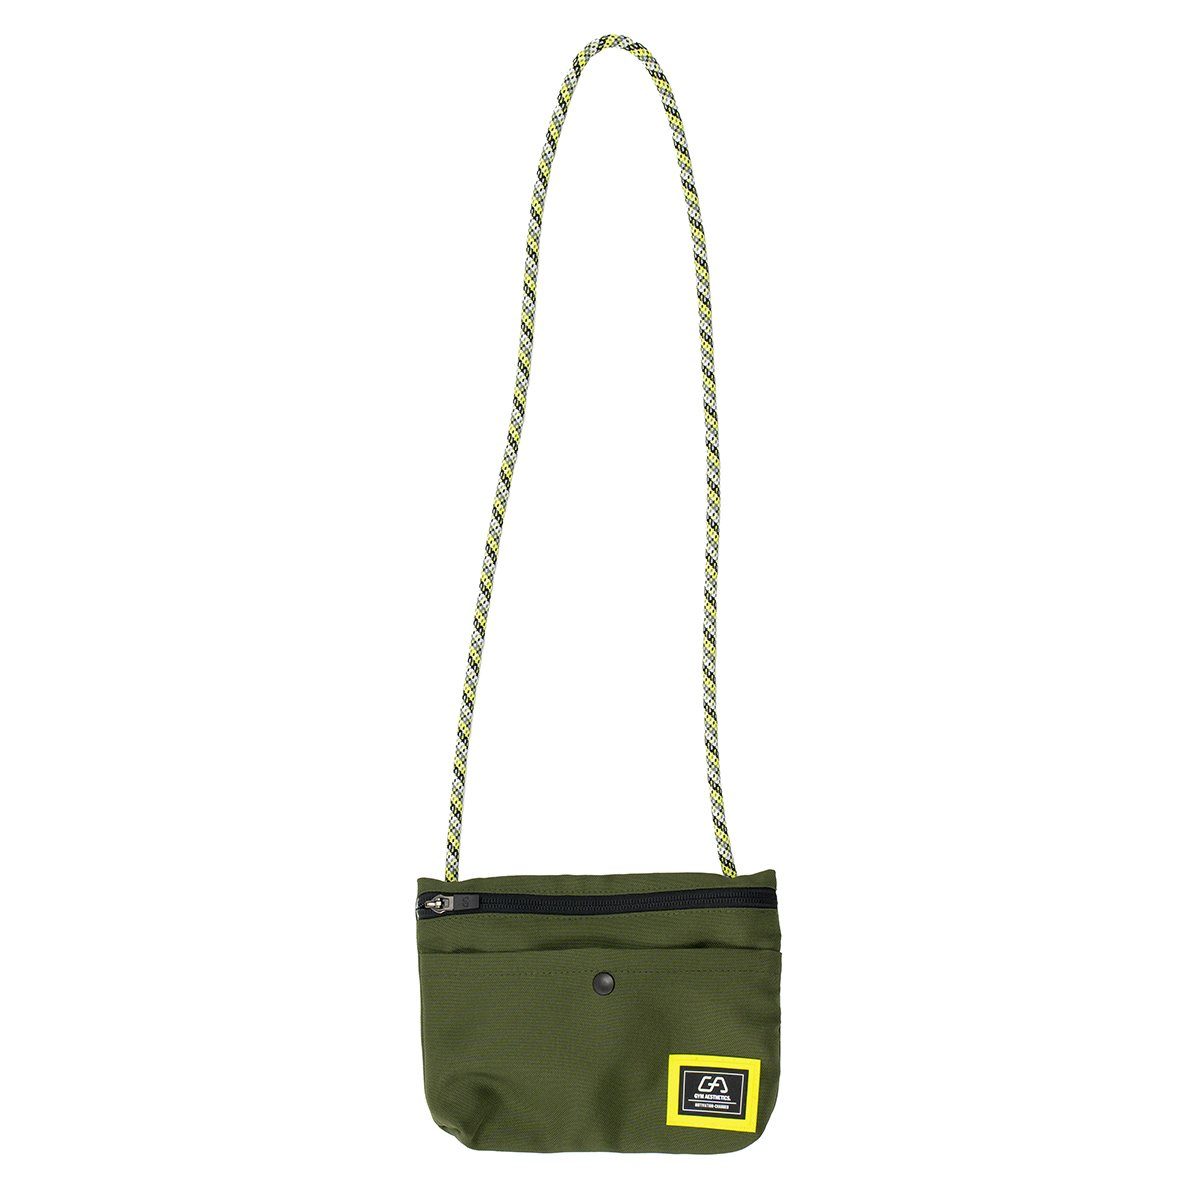 GYM AESTHETICS Umhängetasche Functional Trendy City Bag, Stylische Citytasche Olive